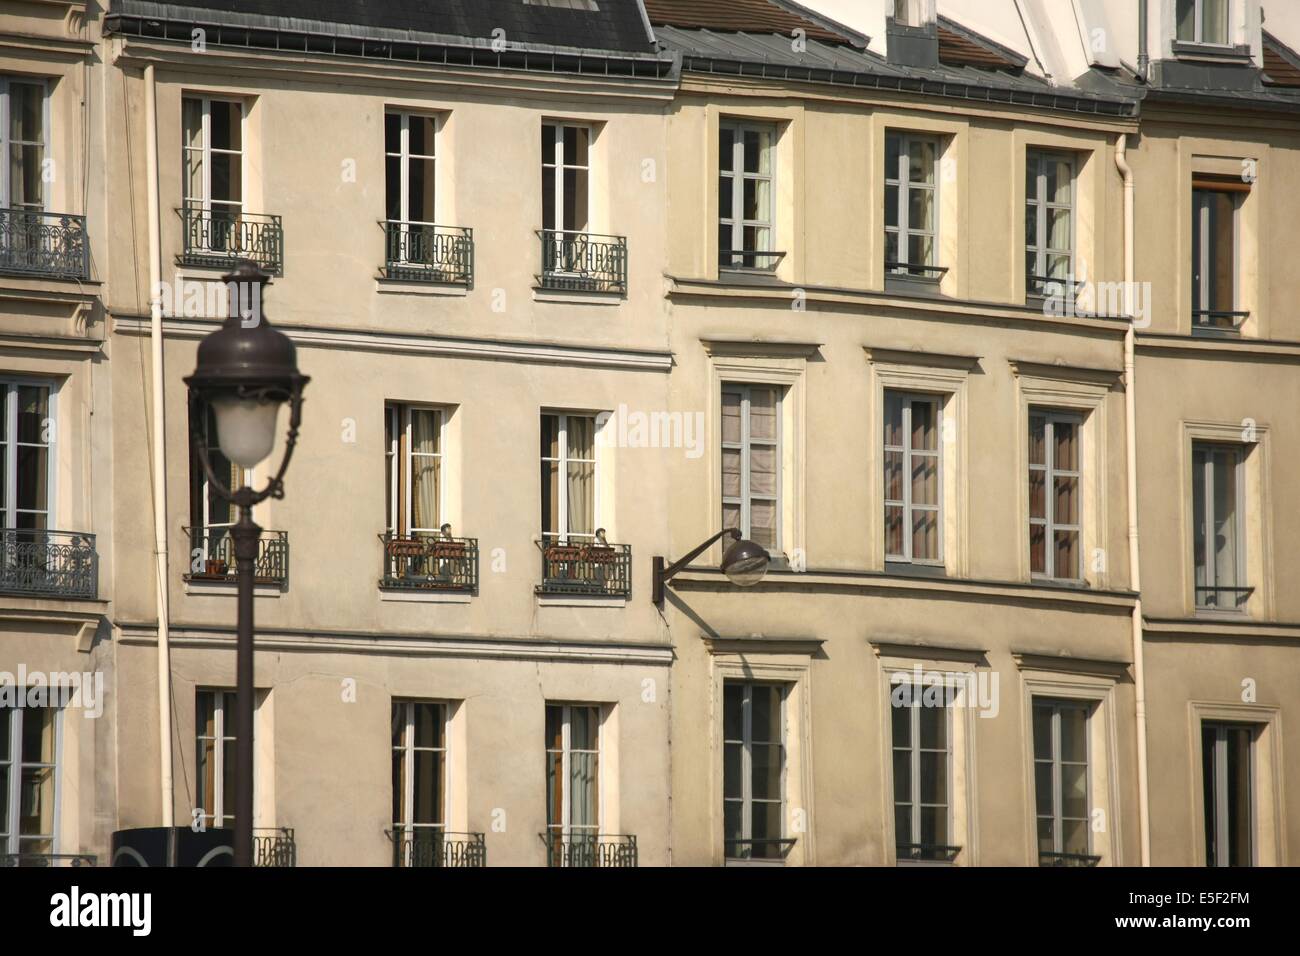 France, paris, quai des grands augustins, bord de seine, immeubles, batiments, alignements de facades, Stock Photo